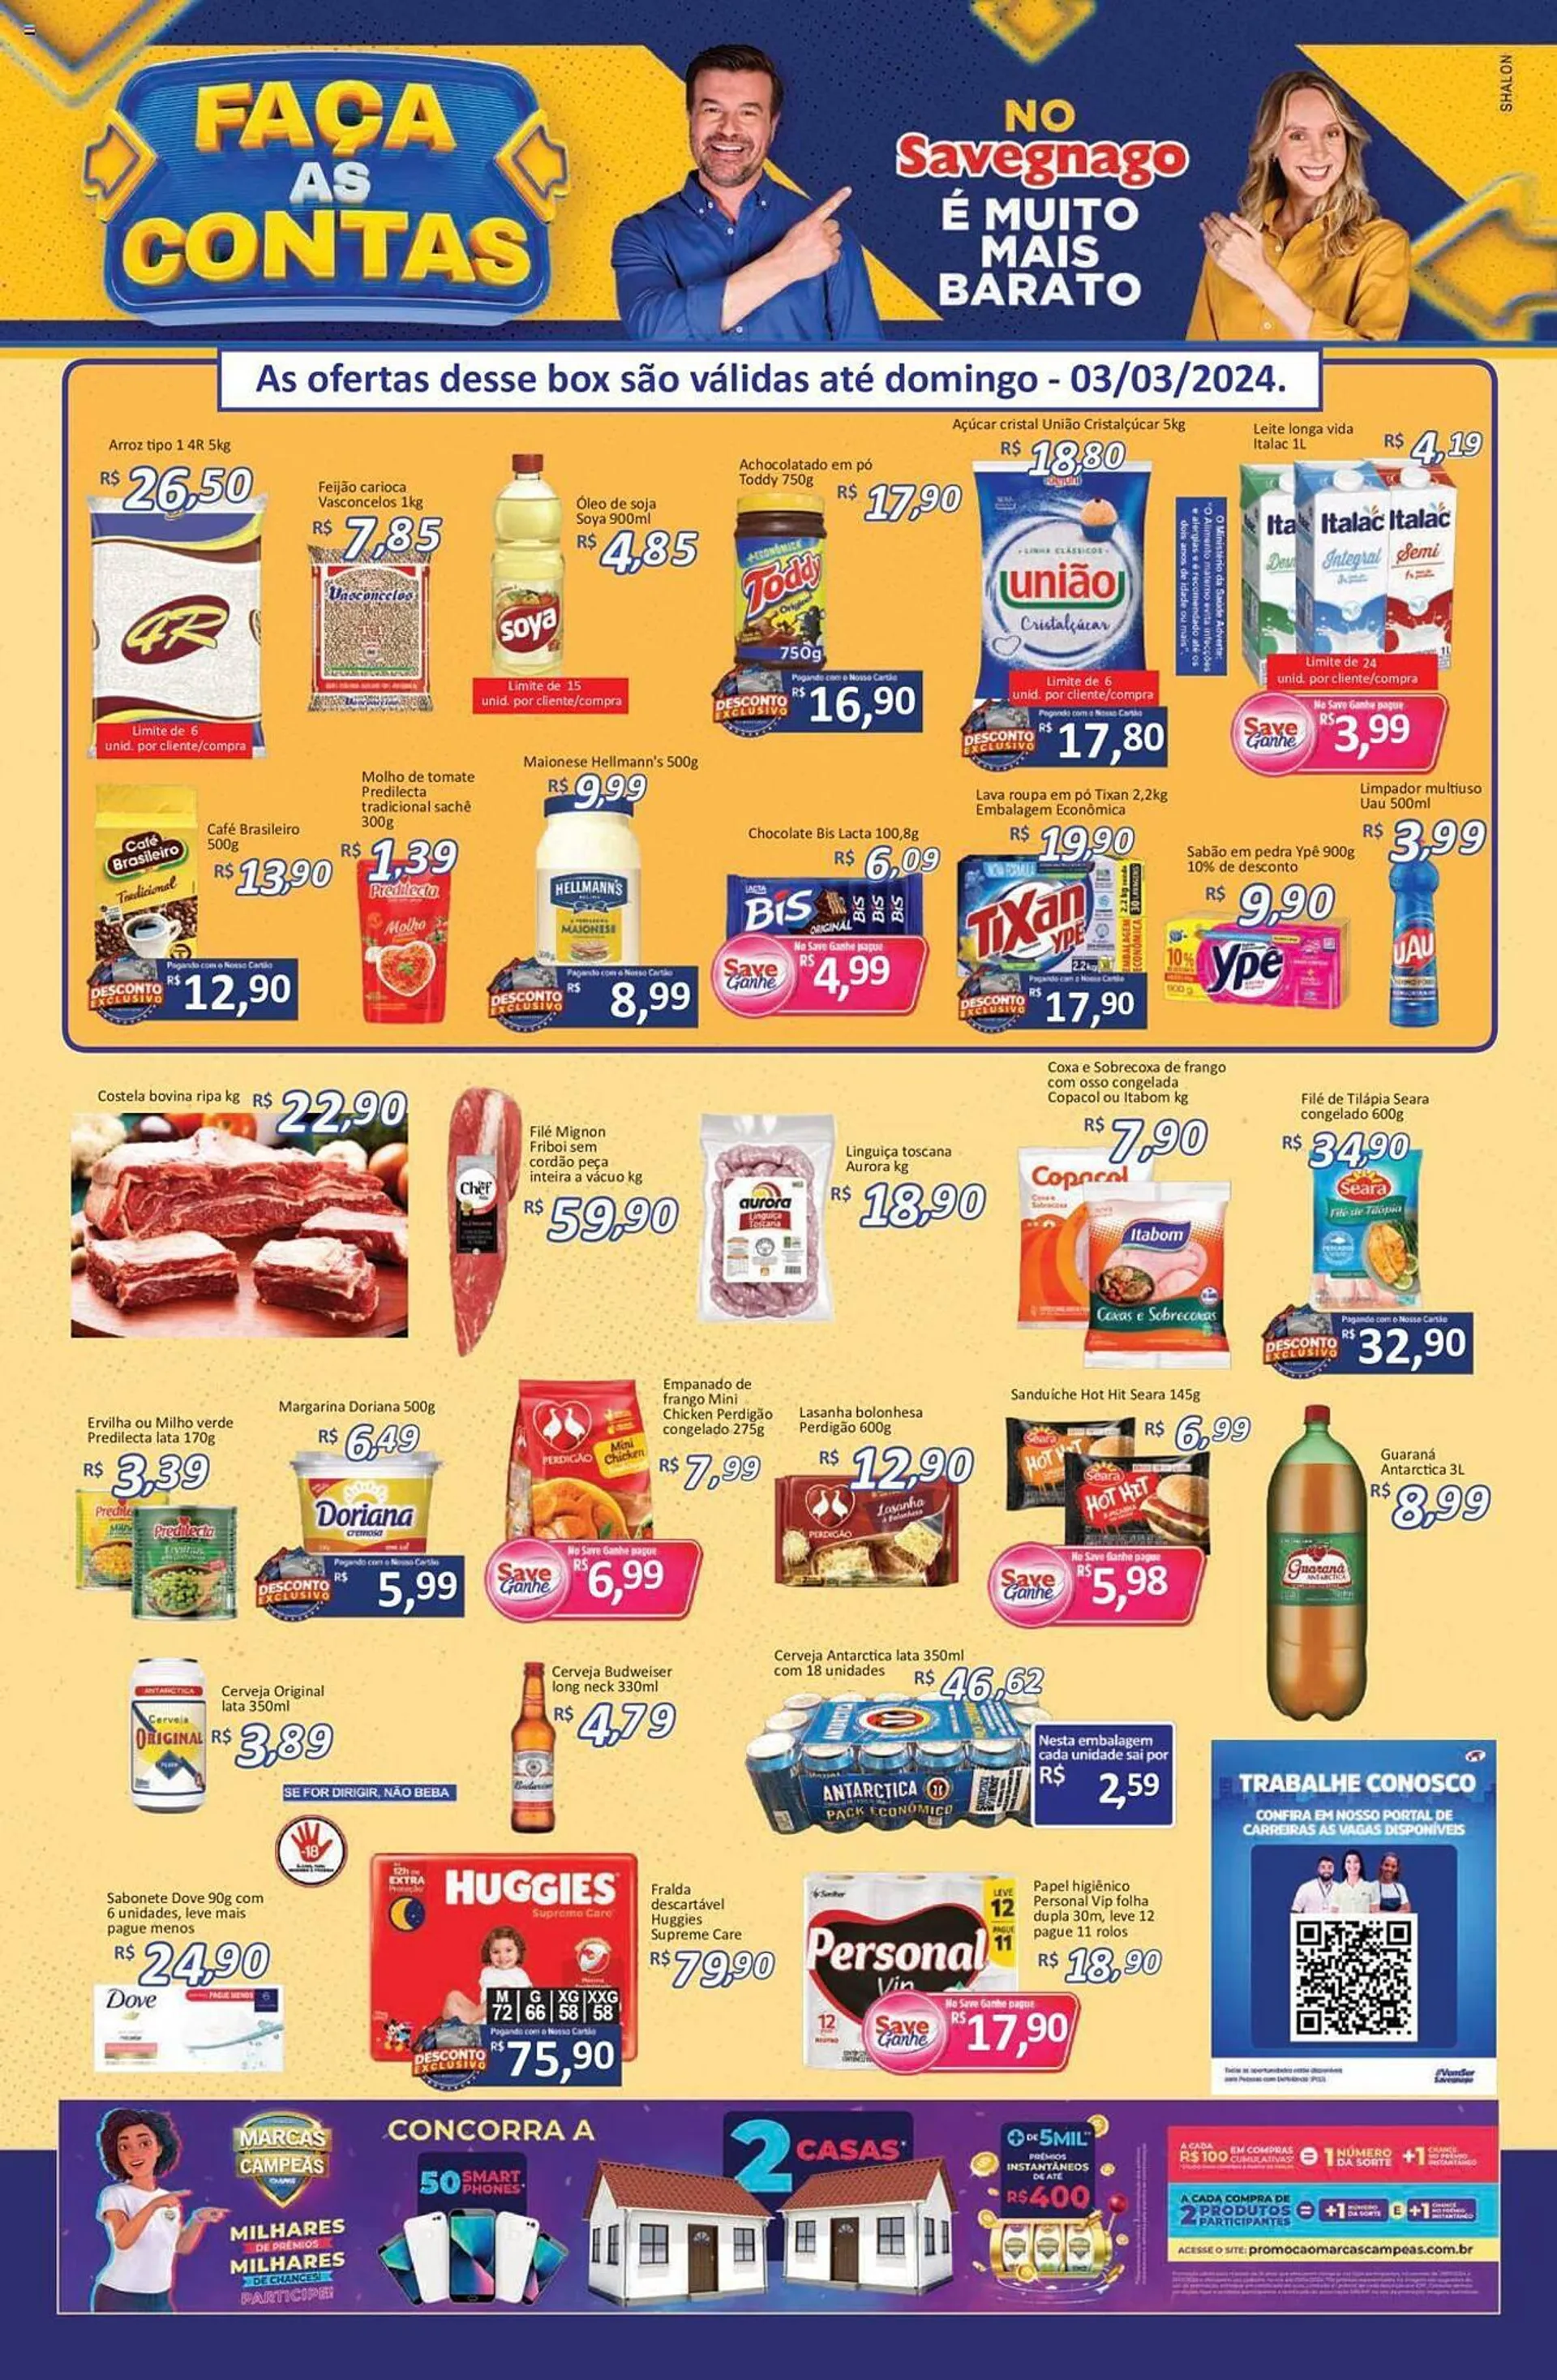 Encarte de Catálogo Supermercados Savegnago 29 de fevereiro até 6 de março 2024 - Pagina 